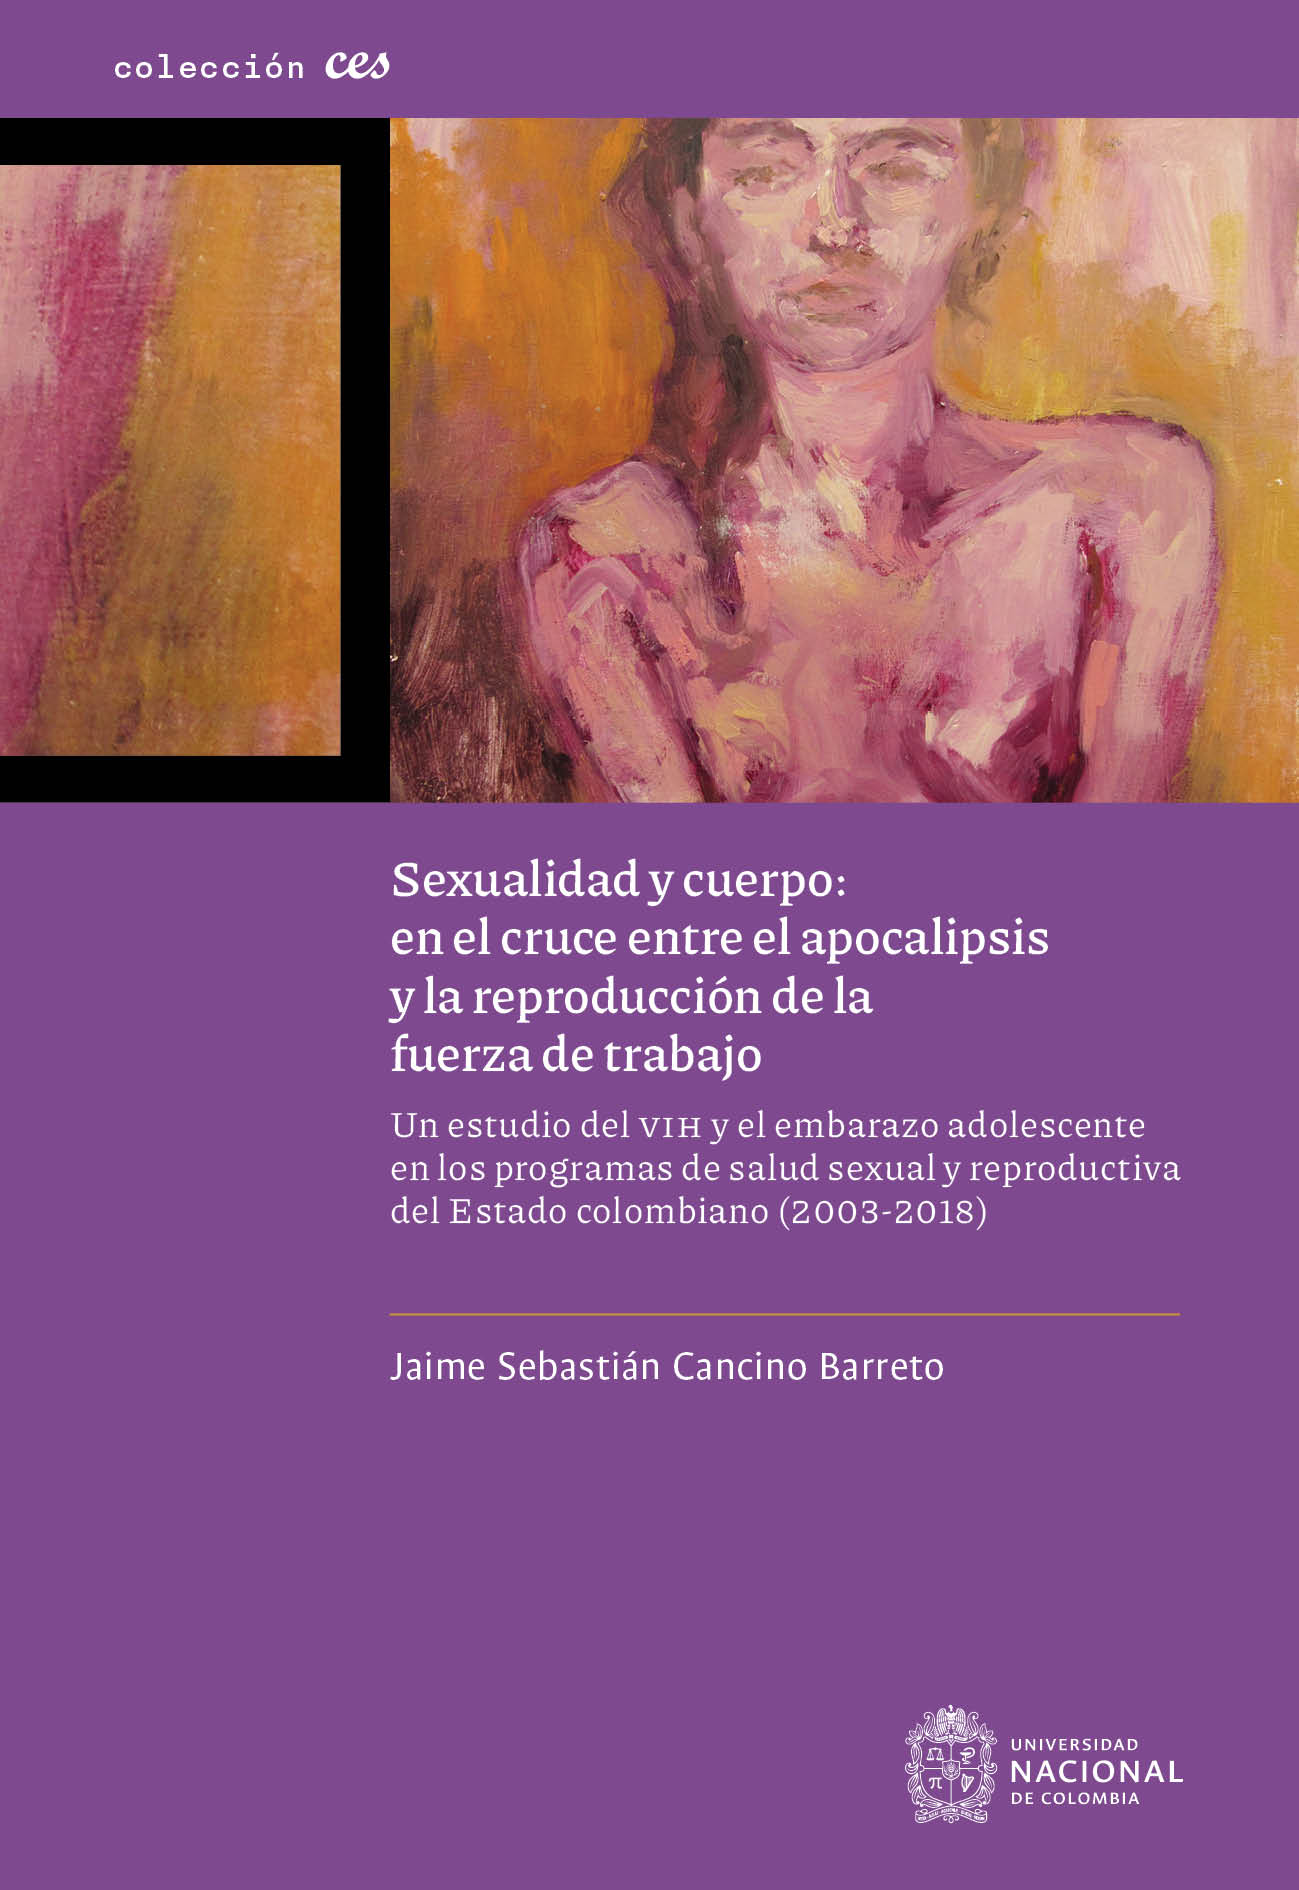 Sexualidad y cuerpo: en el cruce entre el apocalipsis y la reproducción de la fuerza de trabajo. Un estudio del VIH y el embarazo adolescente en los programas de salud sexual y reproductiva del Estado colombiano (2003-2018)